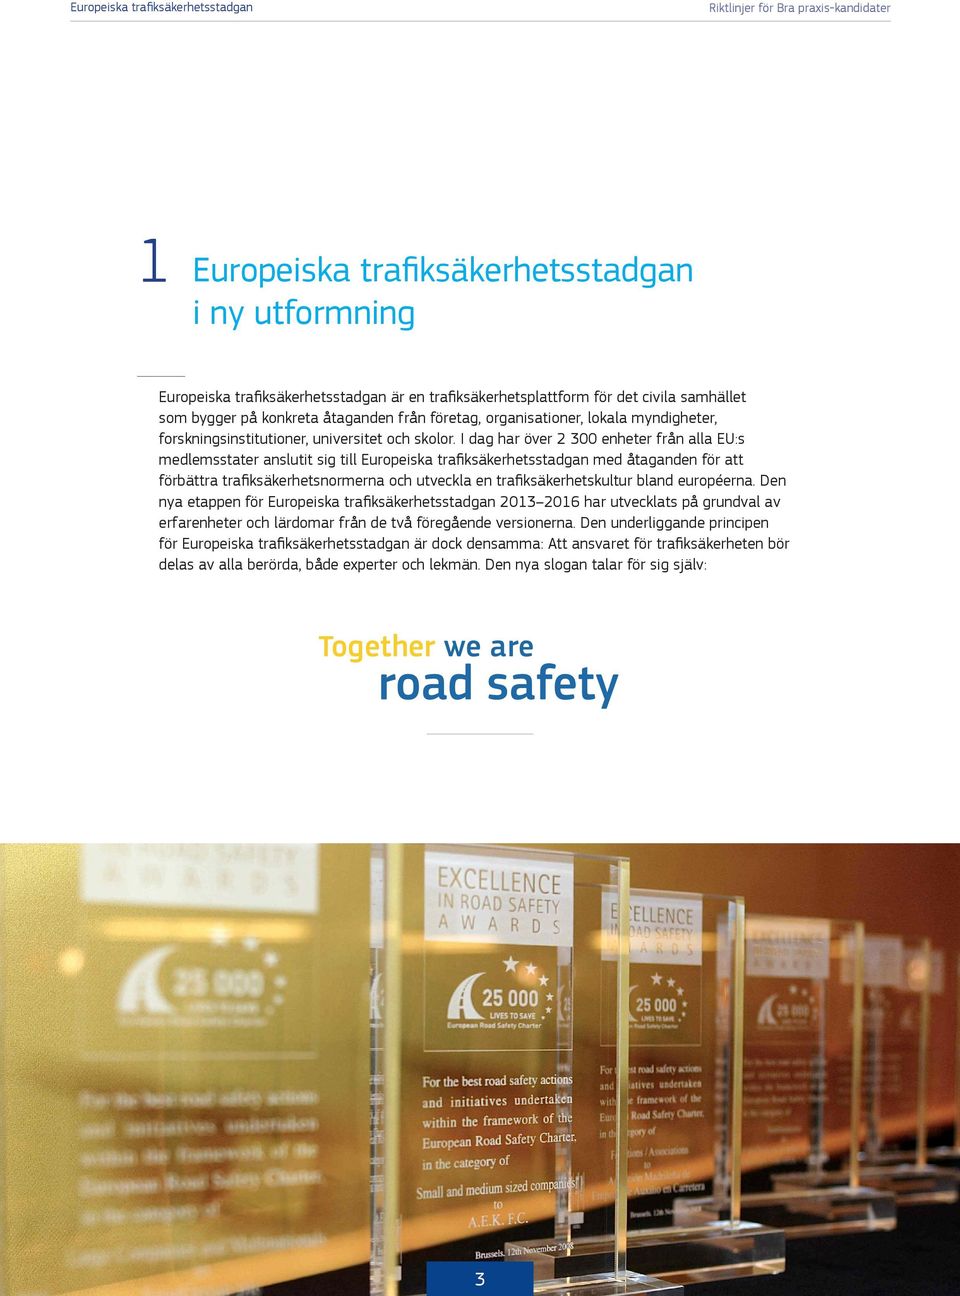 I dag har över 2 300 enheter från alla EU:s medlemsstater anslutit sig till Europeiska trafiksäkerhetsstadgan med åtaganden för att förbättra trafiksäkerhetsnormerna och utveckla en